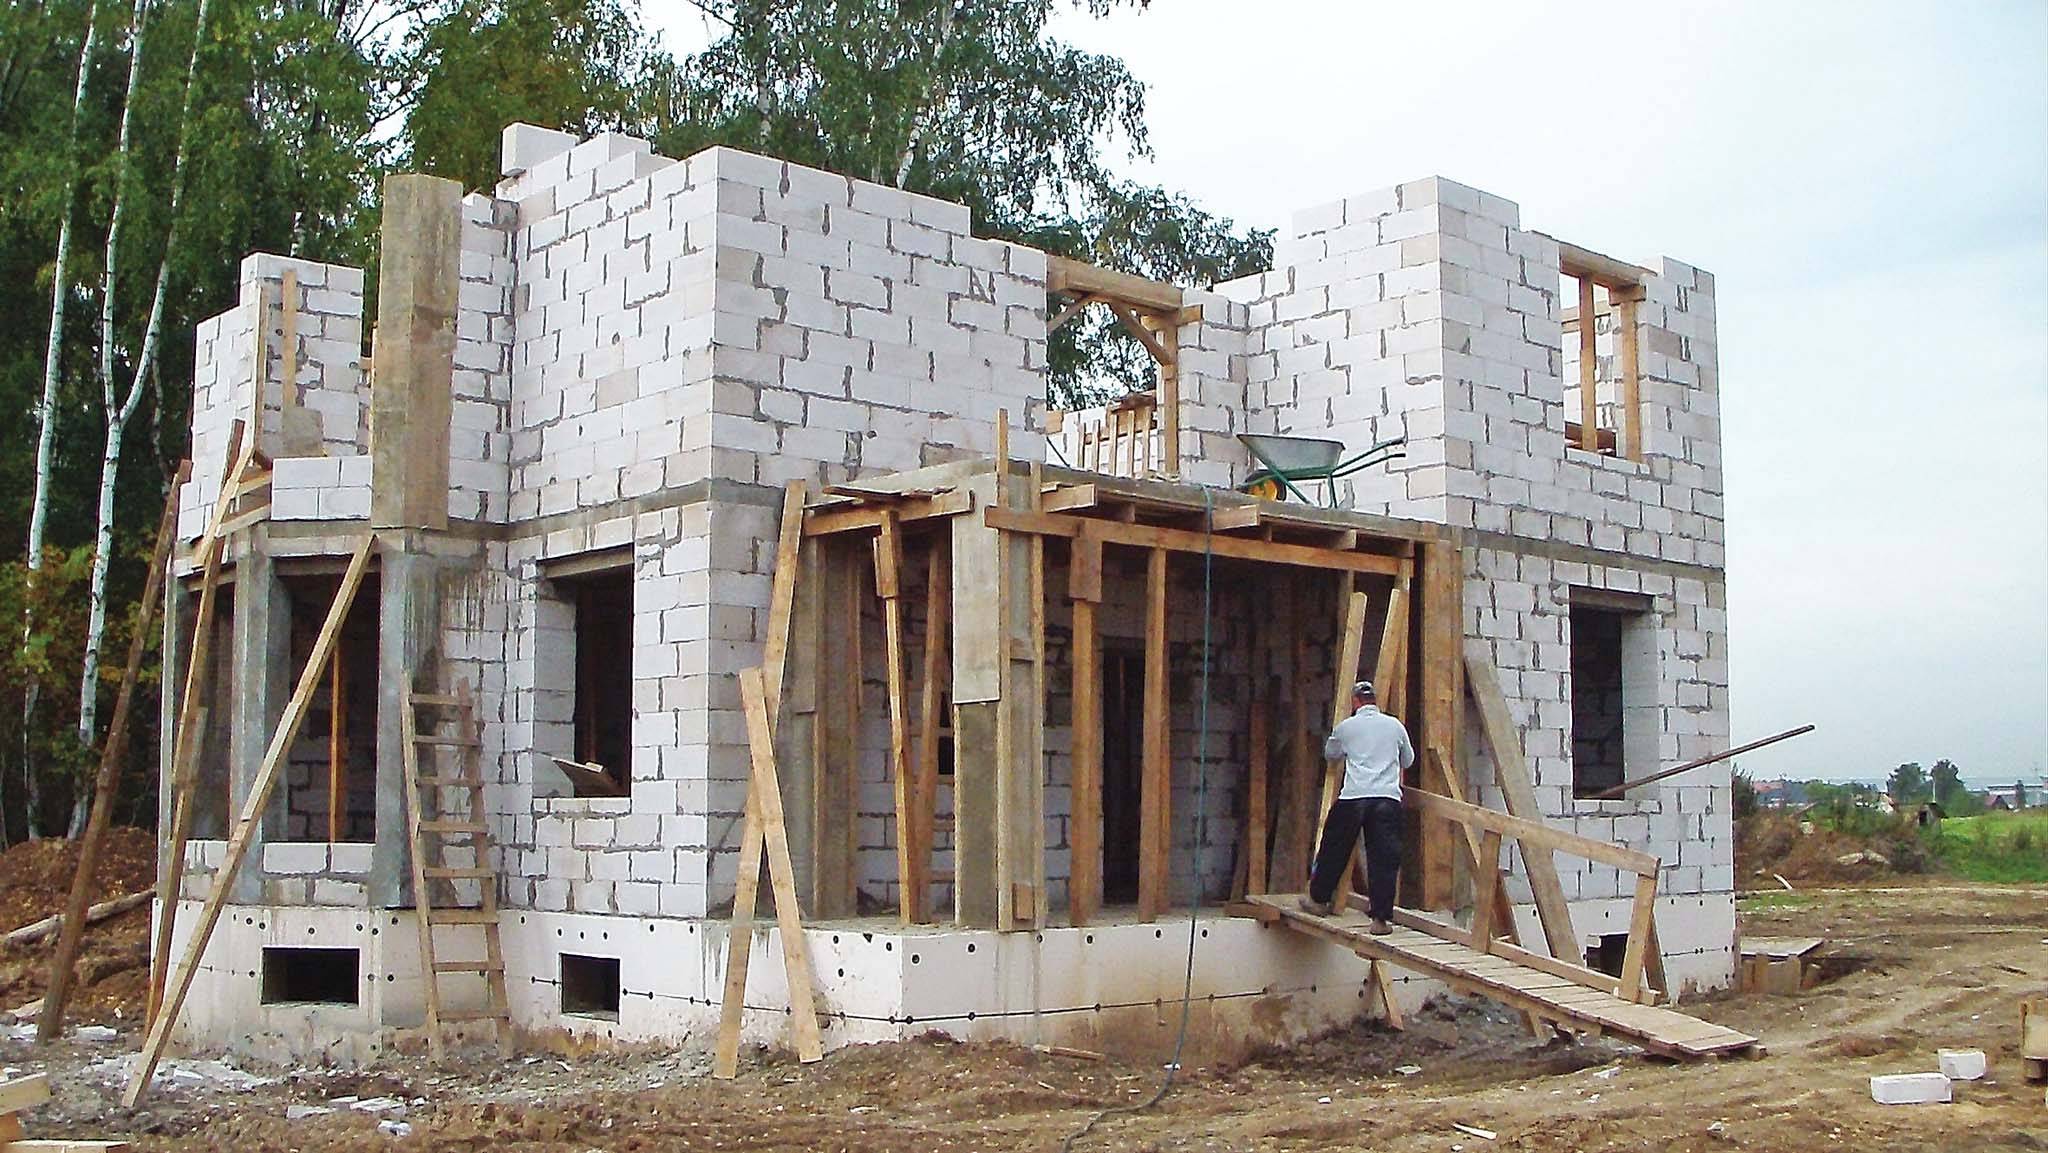 Стоимость постройки дома из пеноблоков своими руками, технология строительства, как построить здание и сделать к нему пристройку, инструкция, фотоотчет и видео-уроки